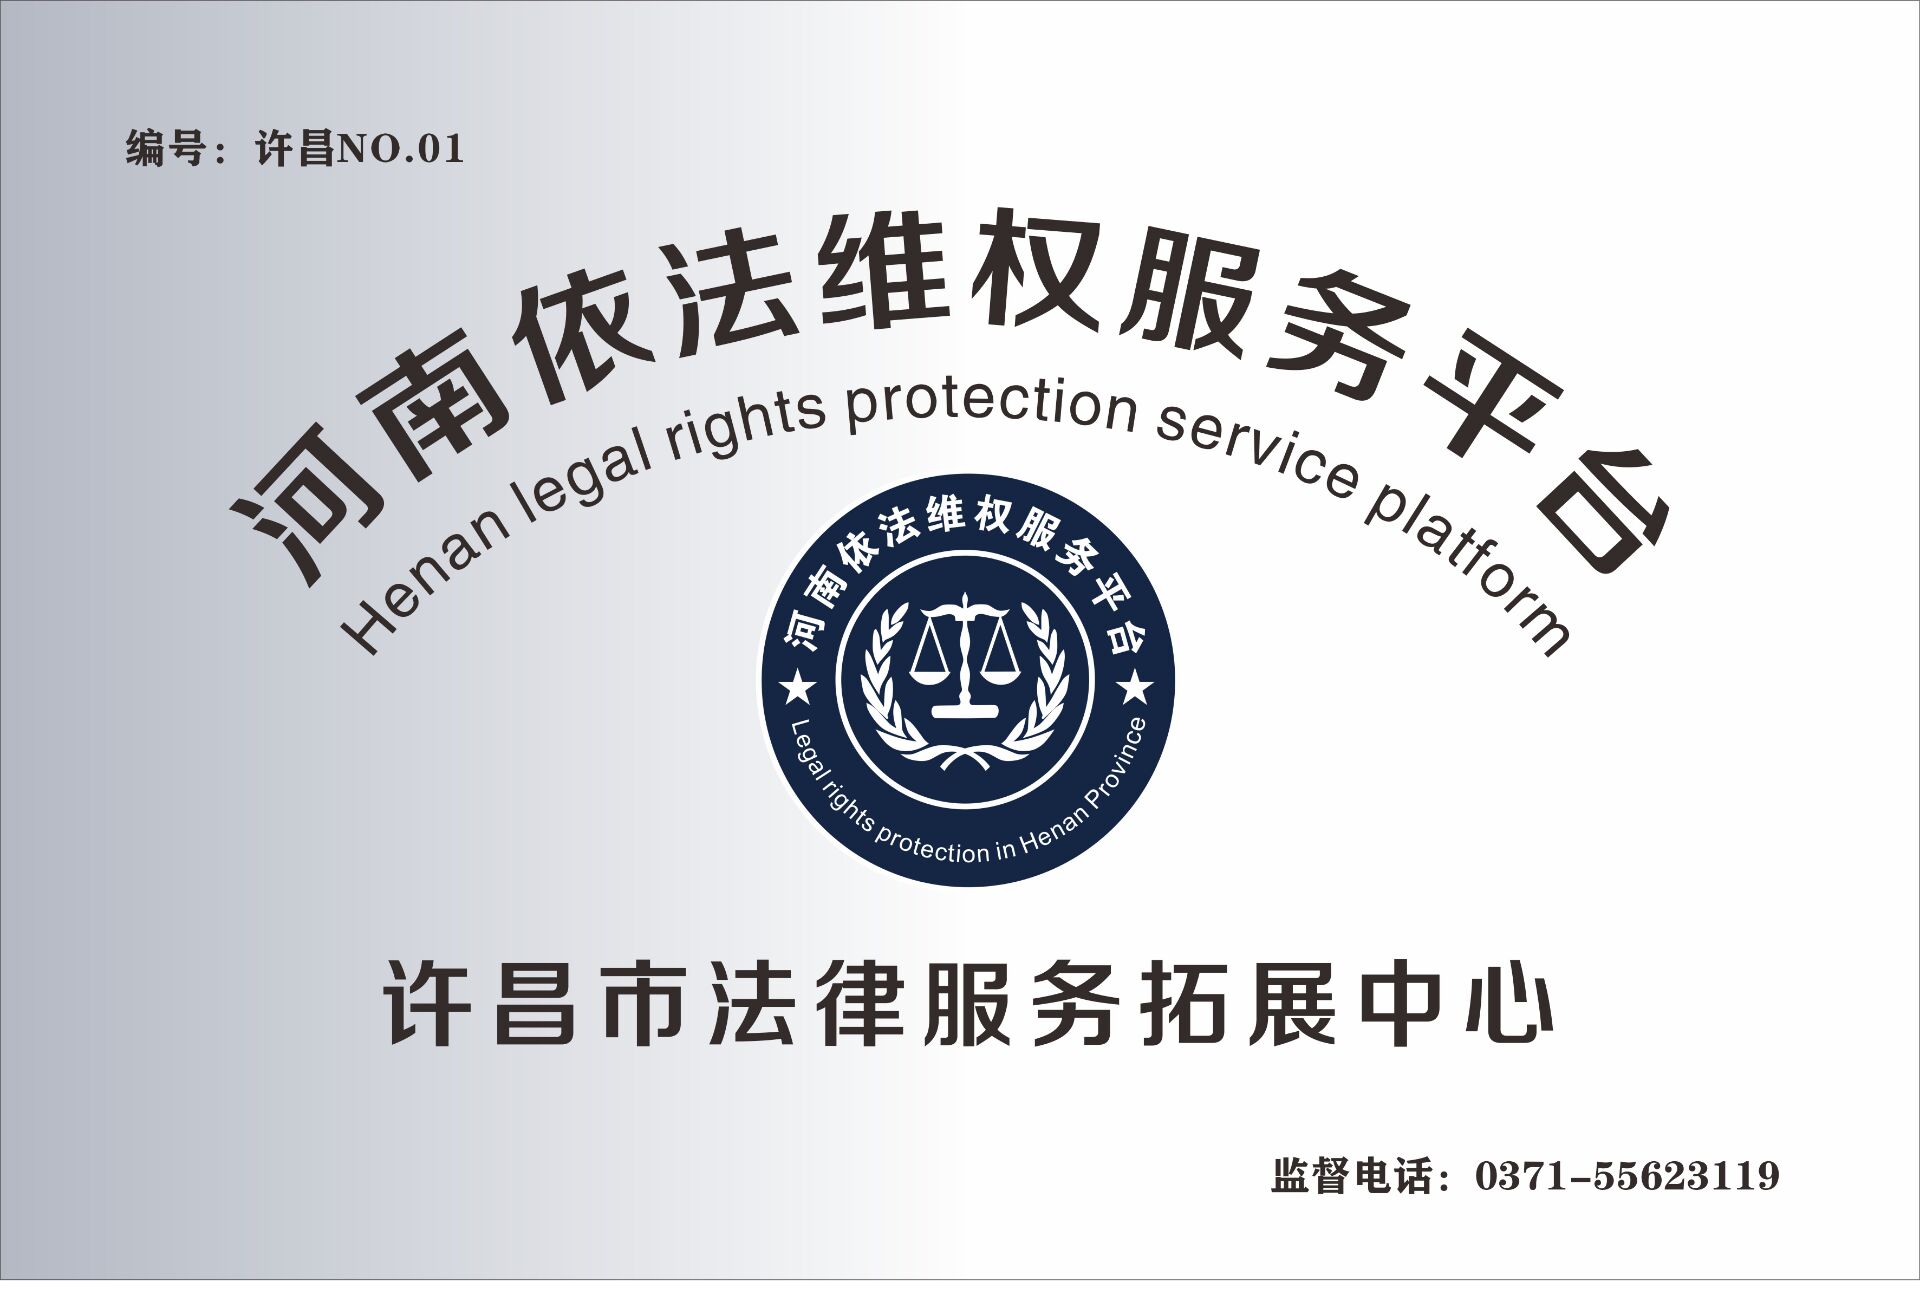 许昌市法律服务拓展中心